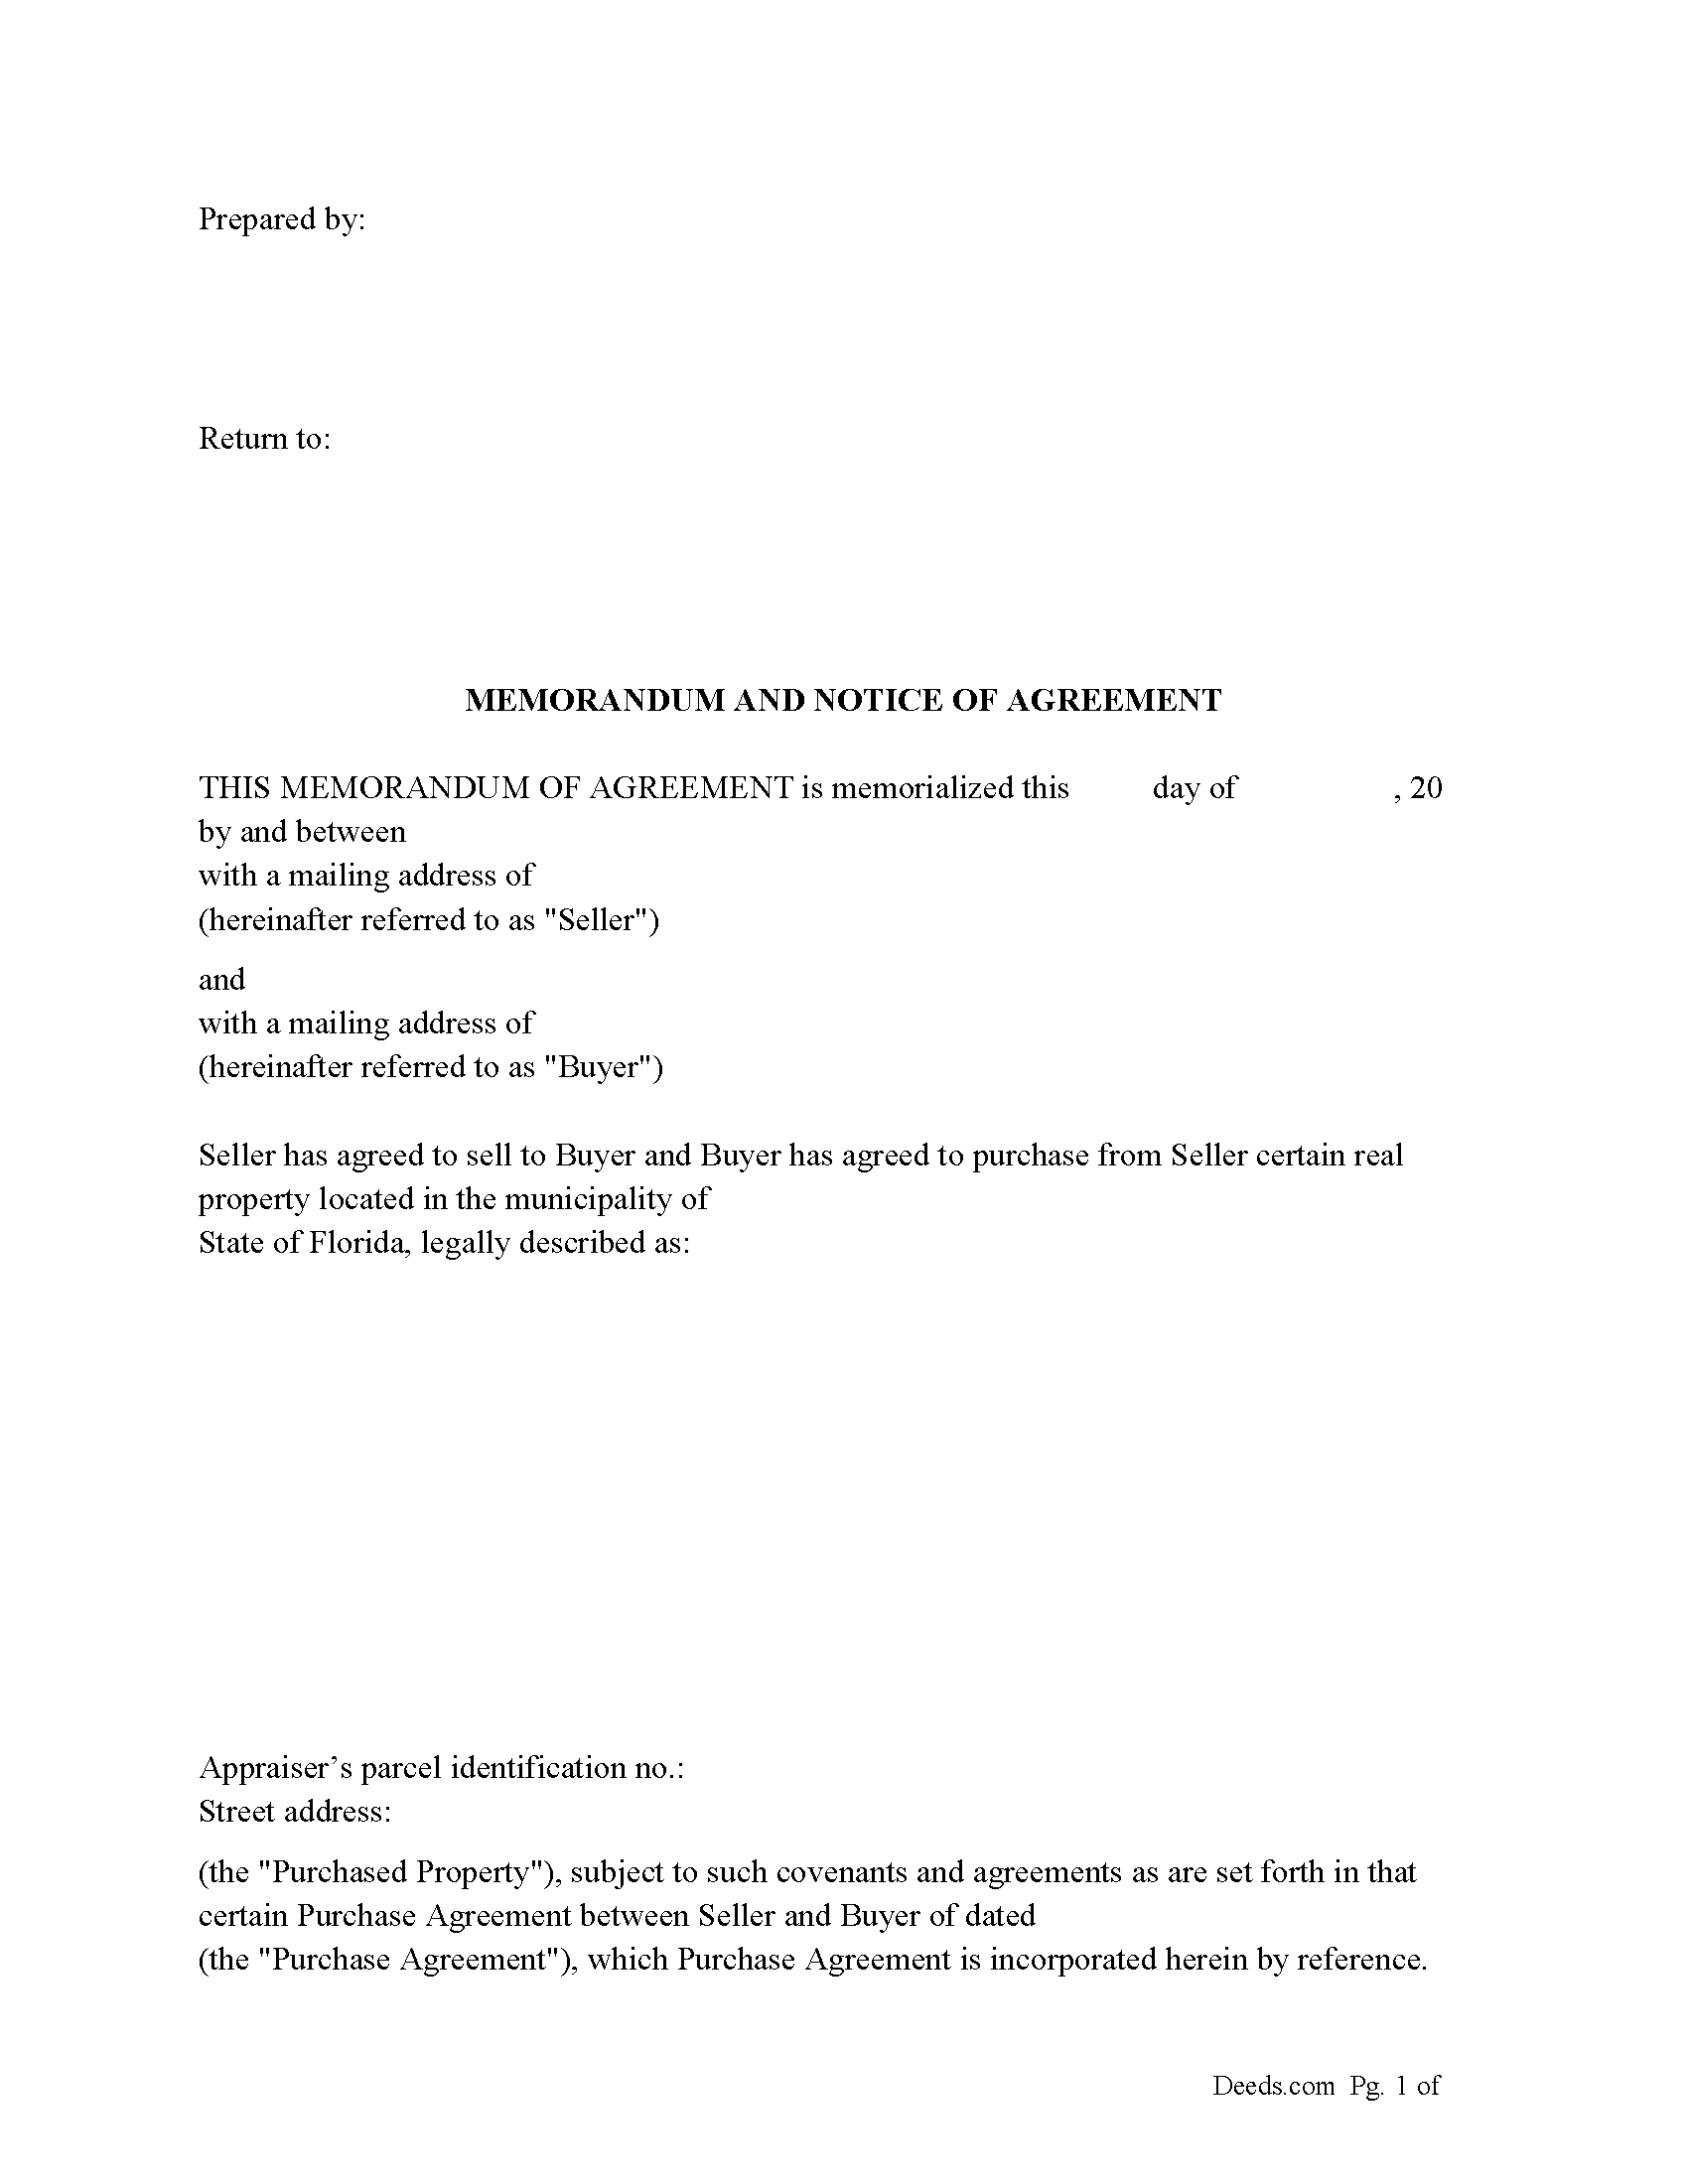 Memorandum and Notice of Agreement